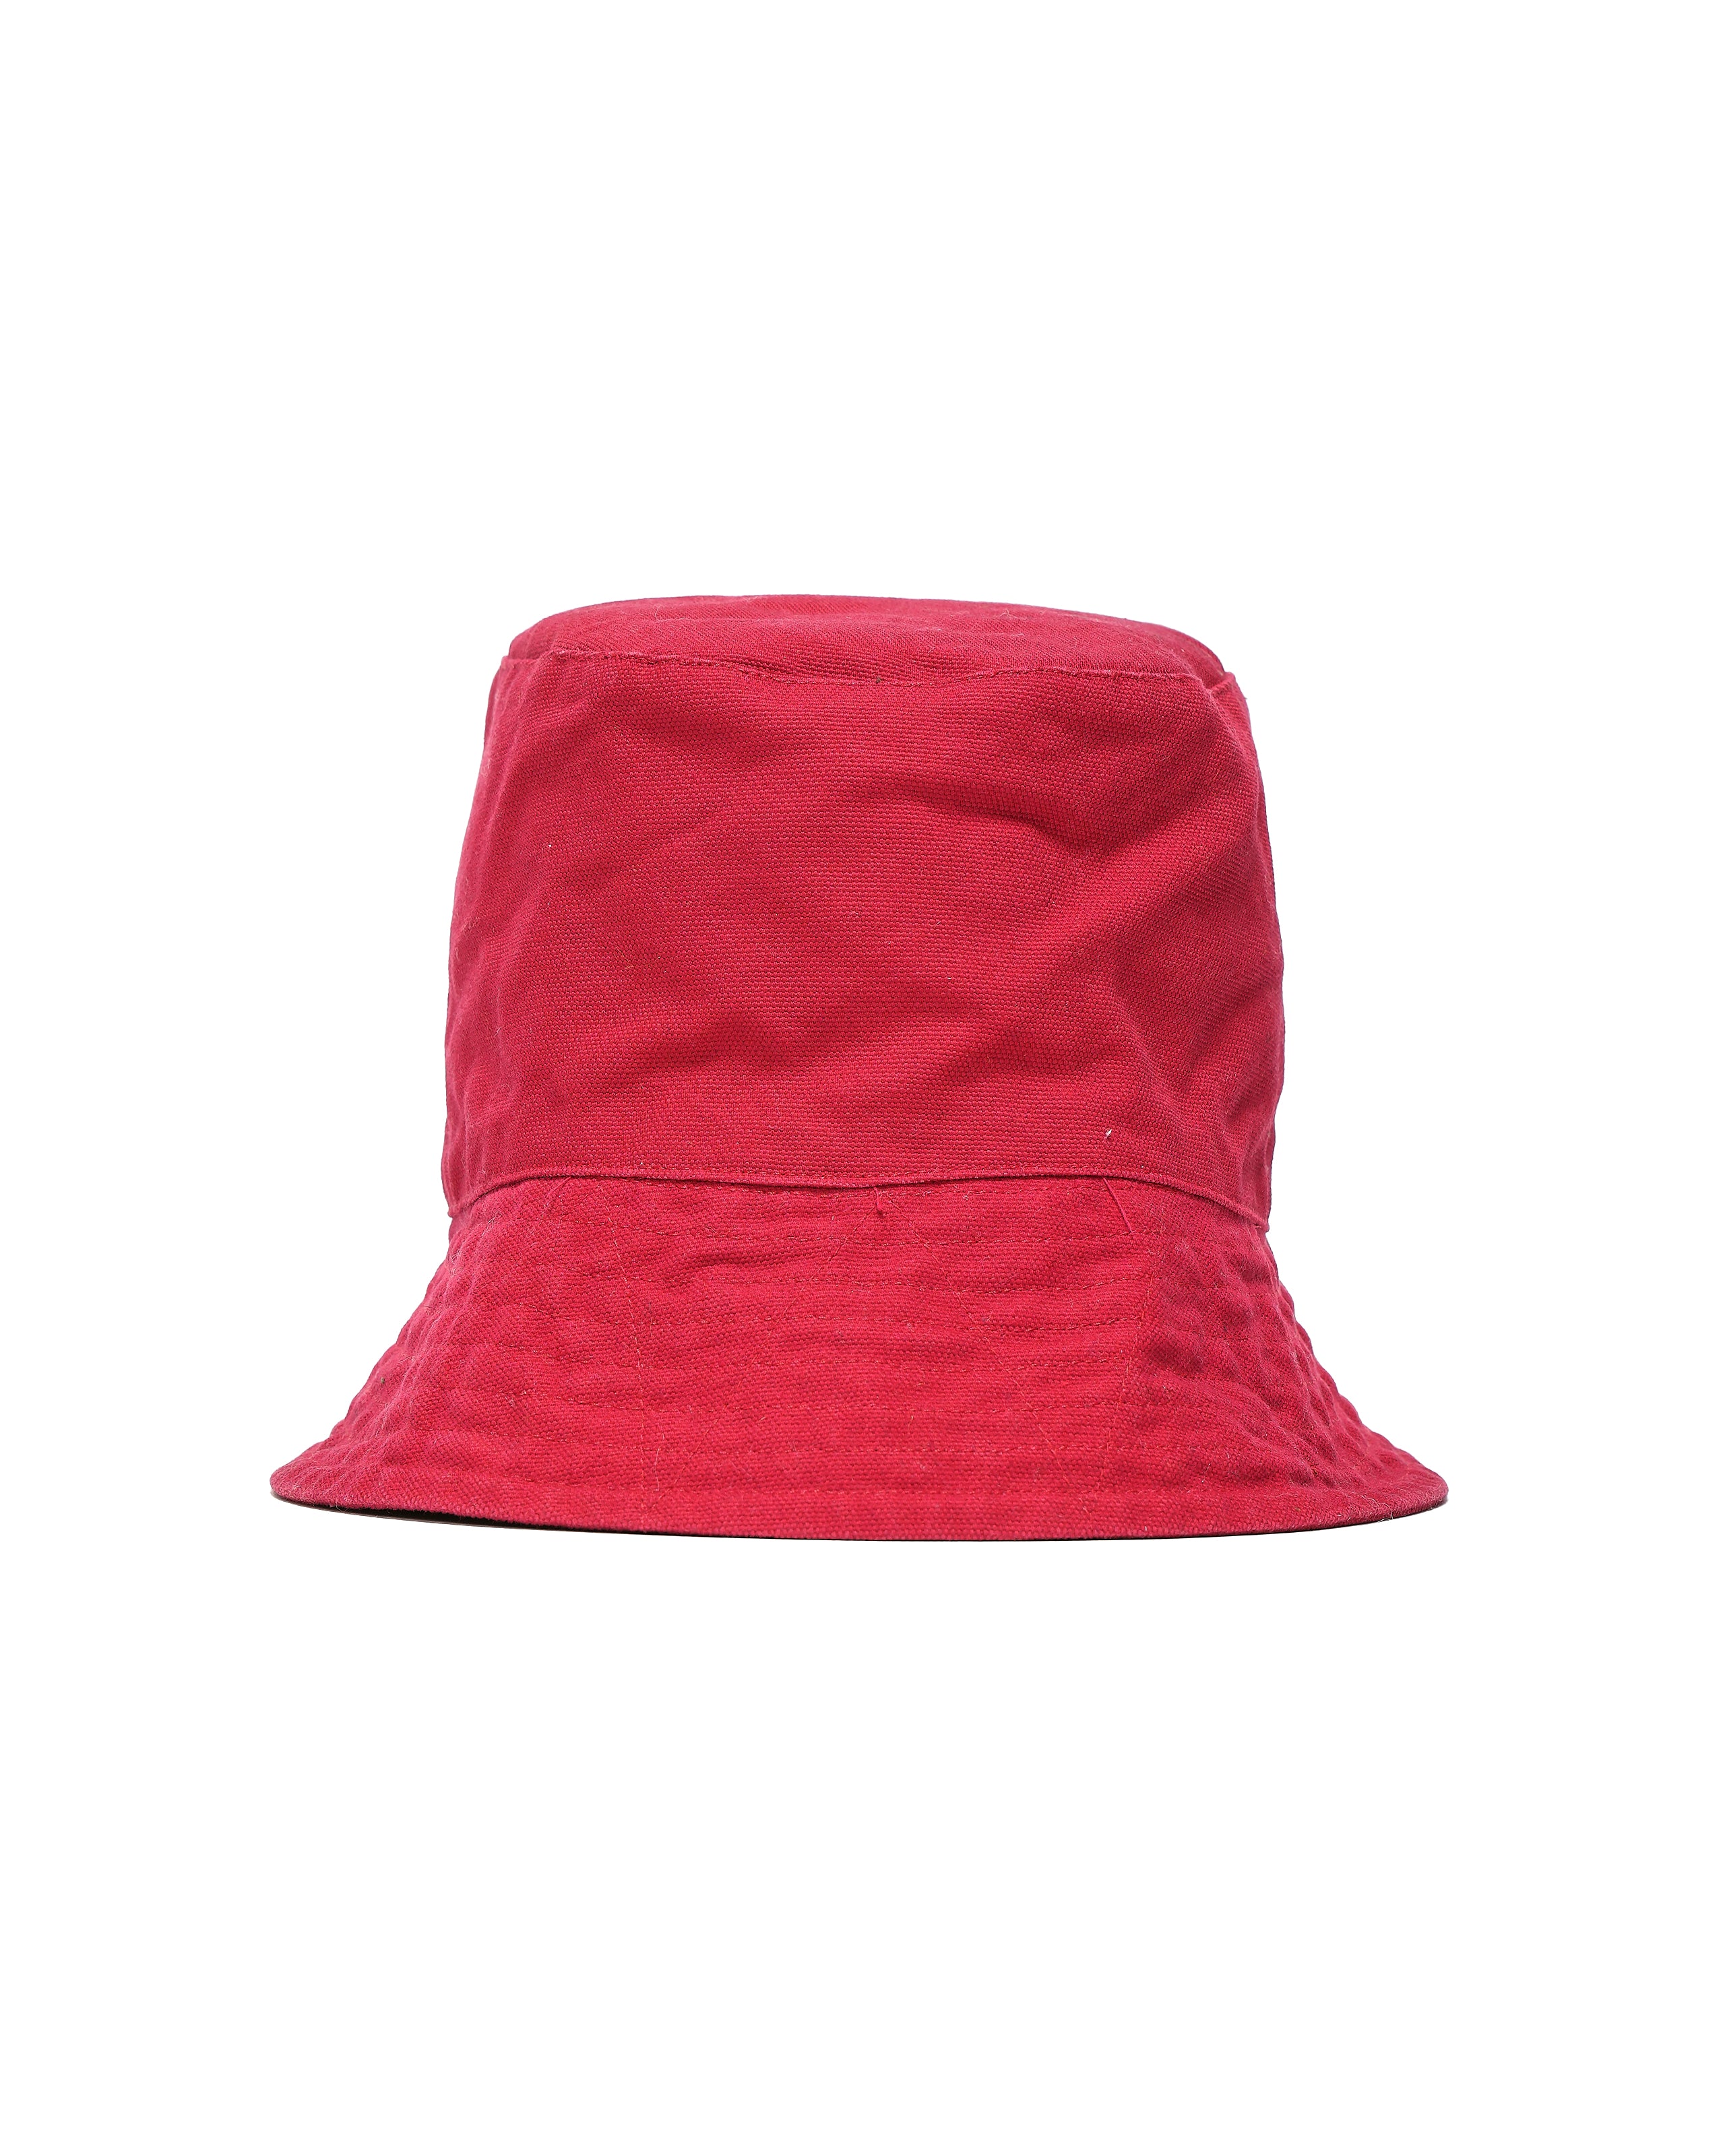 Bucket Hat - Red 12oz Duck Canvas